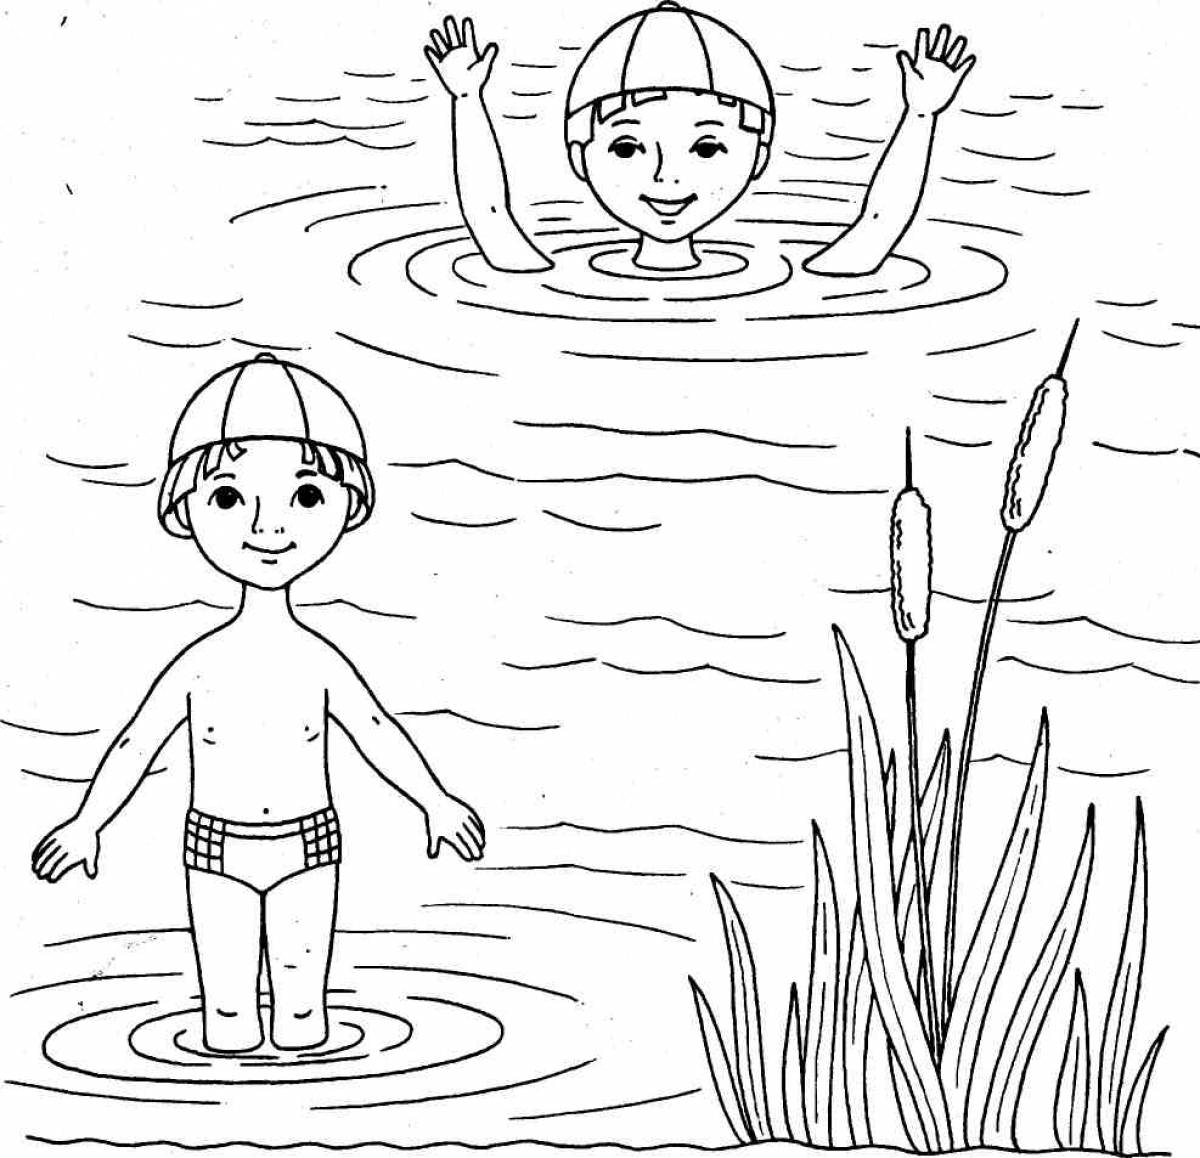 Children on the pond